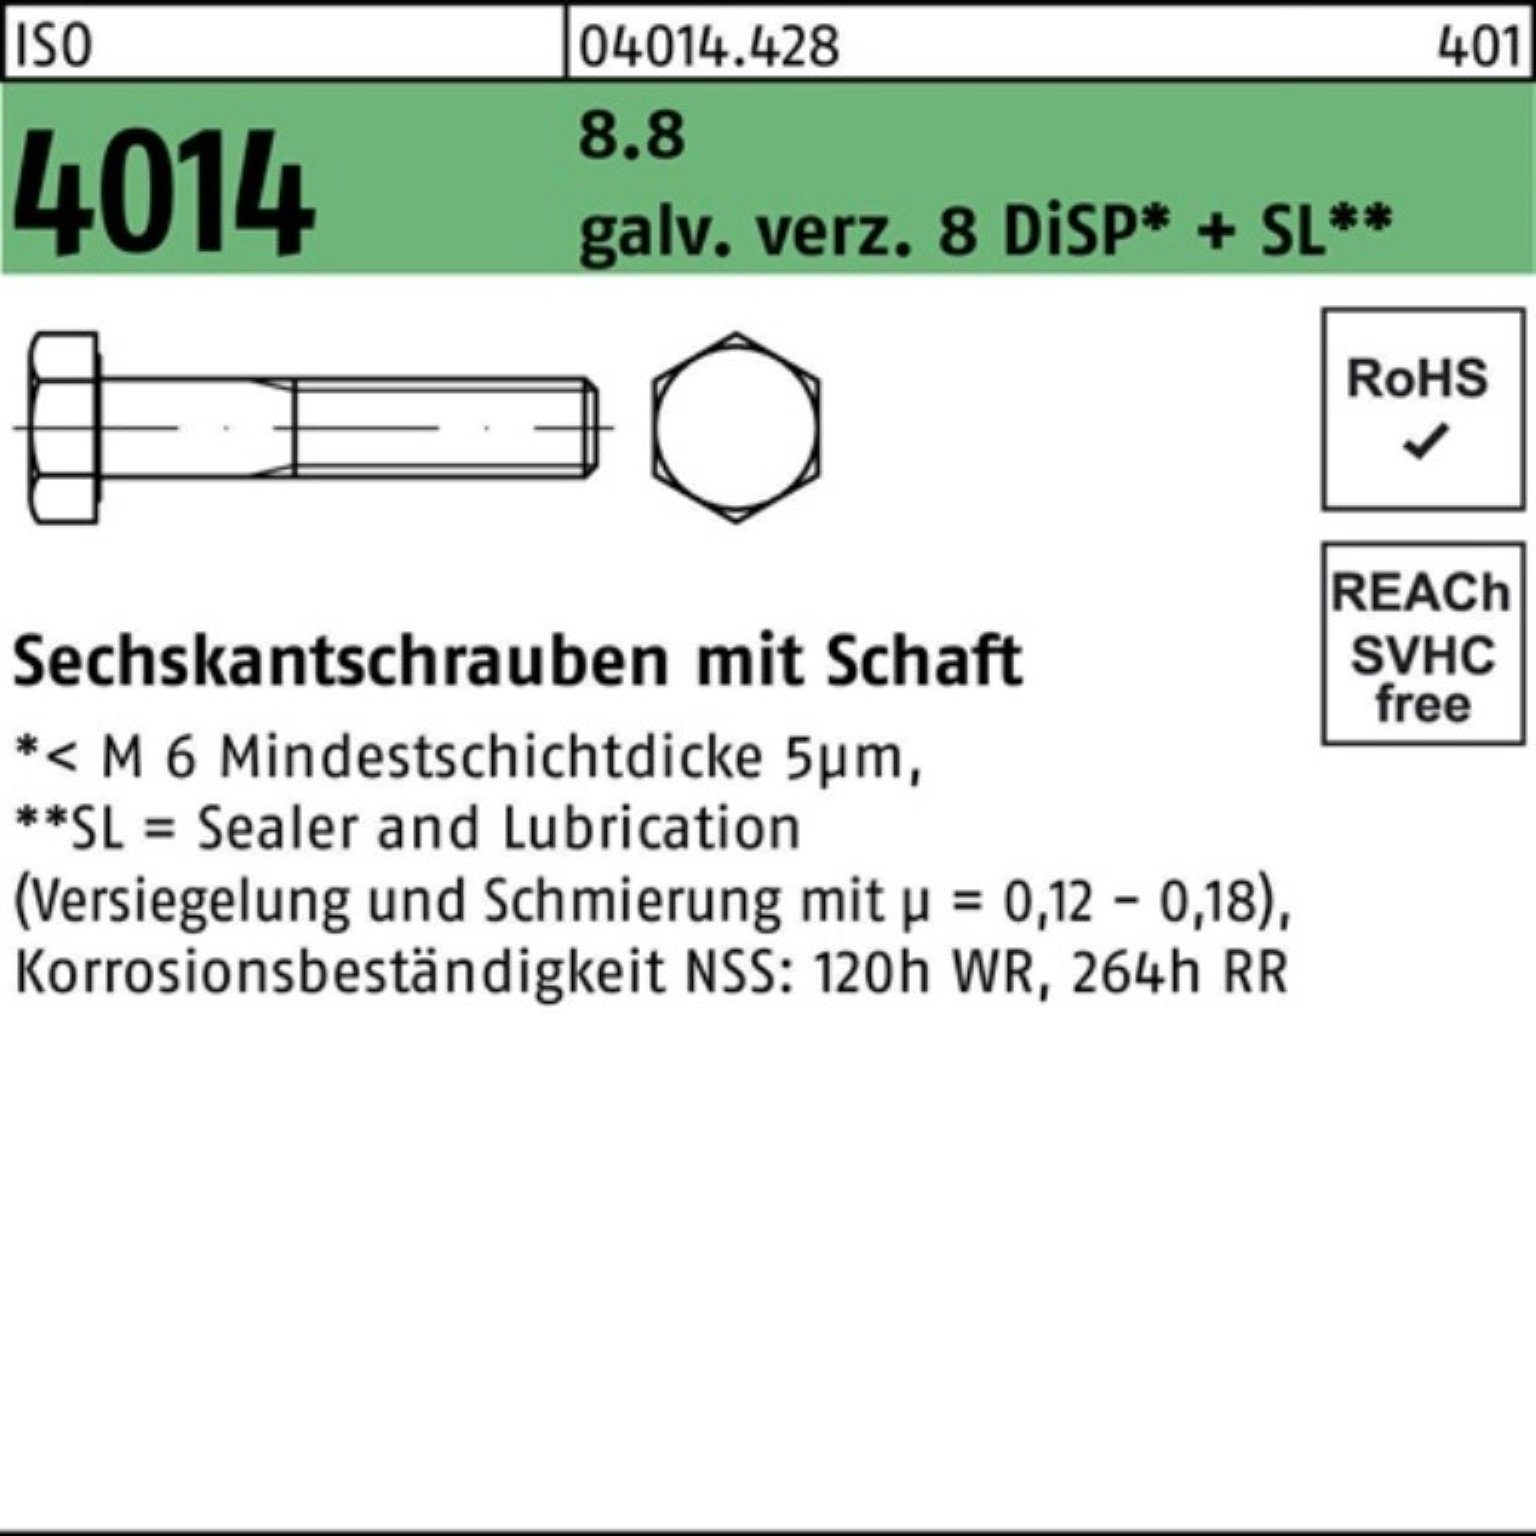 8 galv.verz. ISO 8.8 Pack Sechskantschraube Bufab Sechskantschraube 100er 4014 M20x105 Schaft